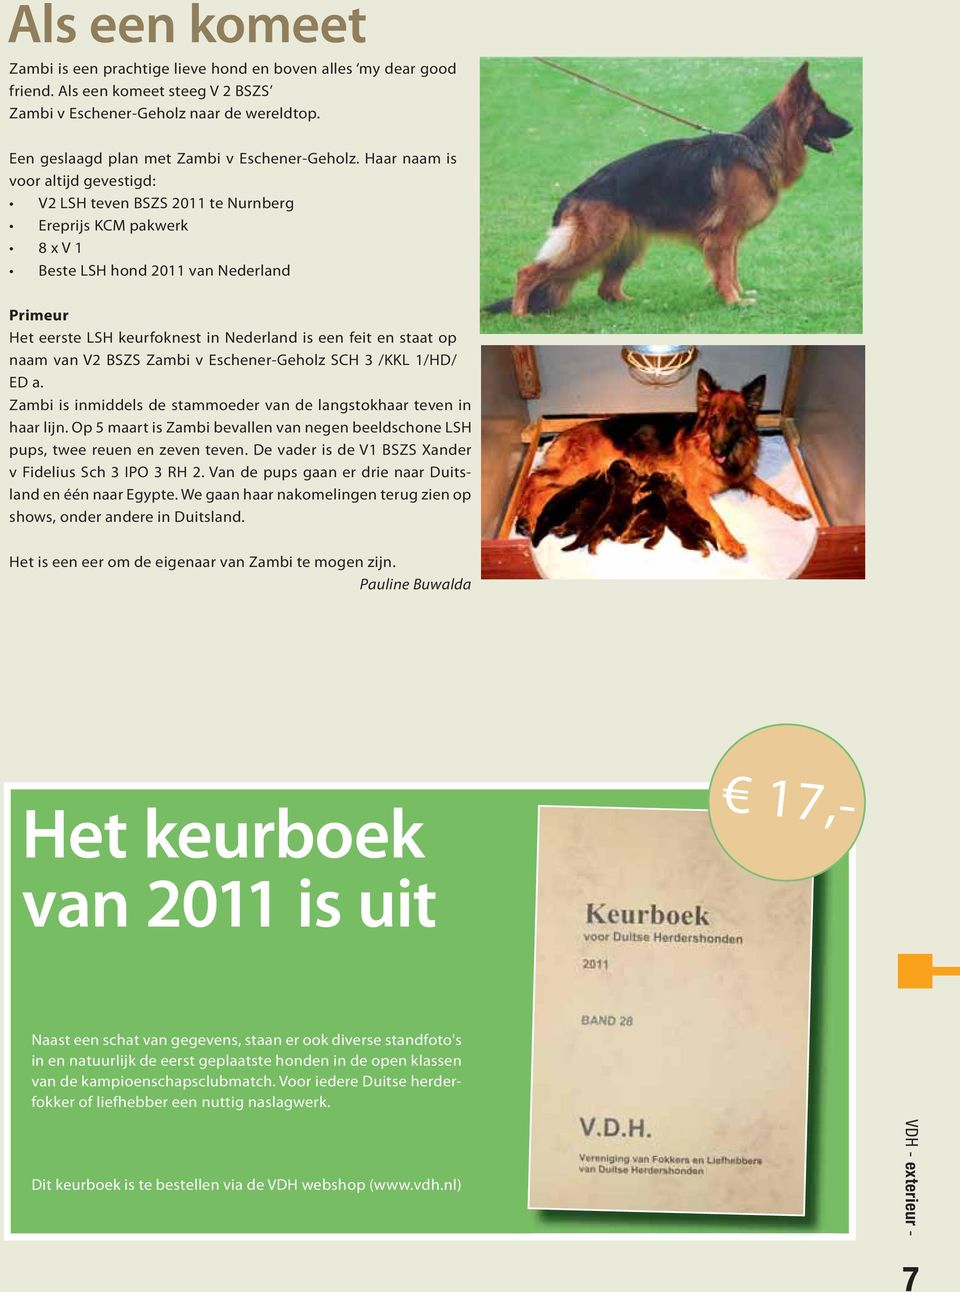 Haar naam is voor altijd gevestigd: V2 LSH teven BSZS 2011 te Nurnberg Ereprijs KCM pakwerk 8 x V 1 Beste LSH hond 2011 van Nederland Primeur Het eerste LSH keurfoknest in Nederland is een feit en